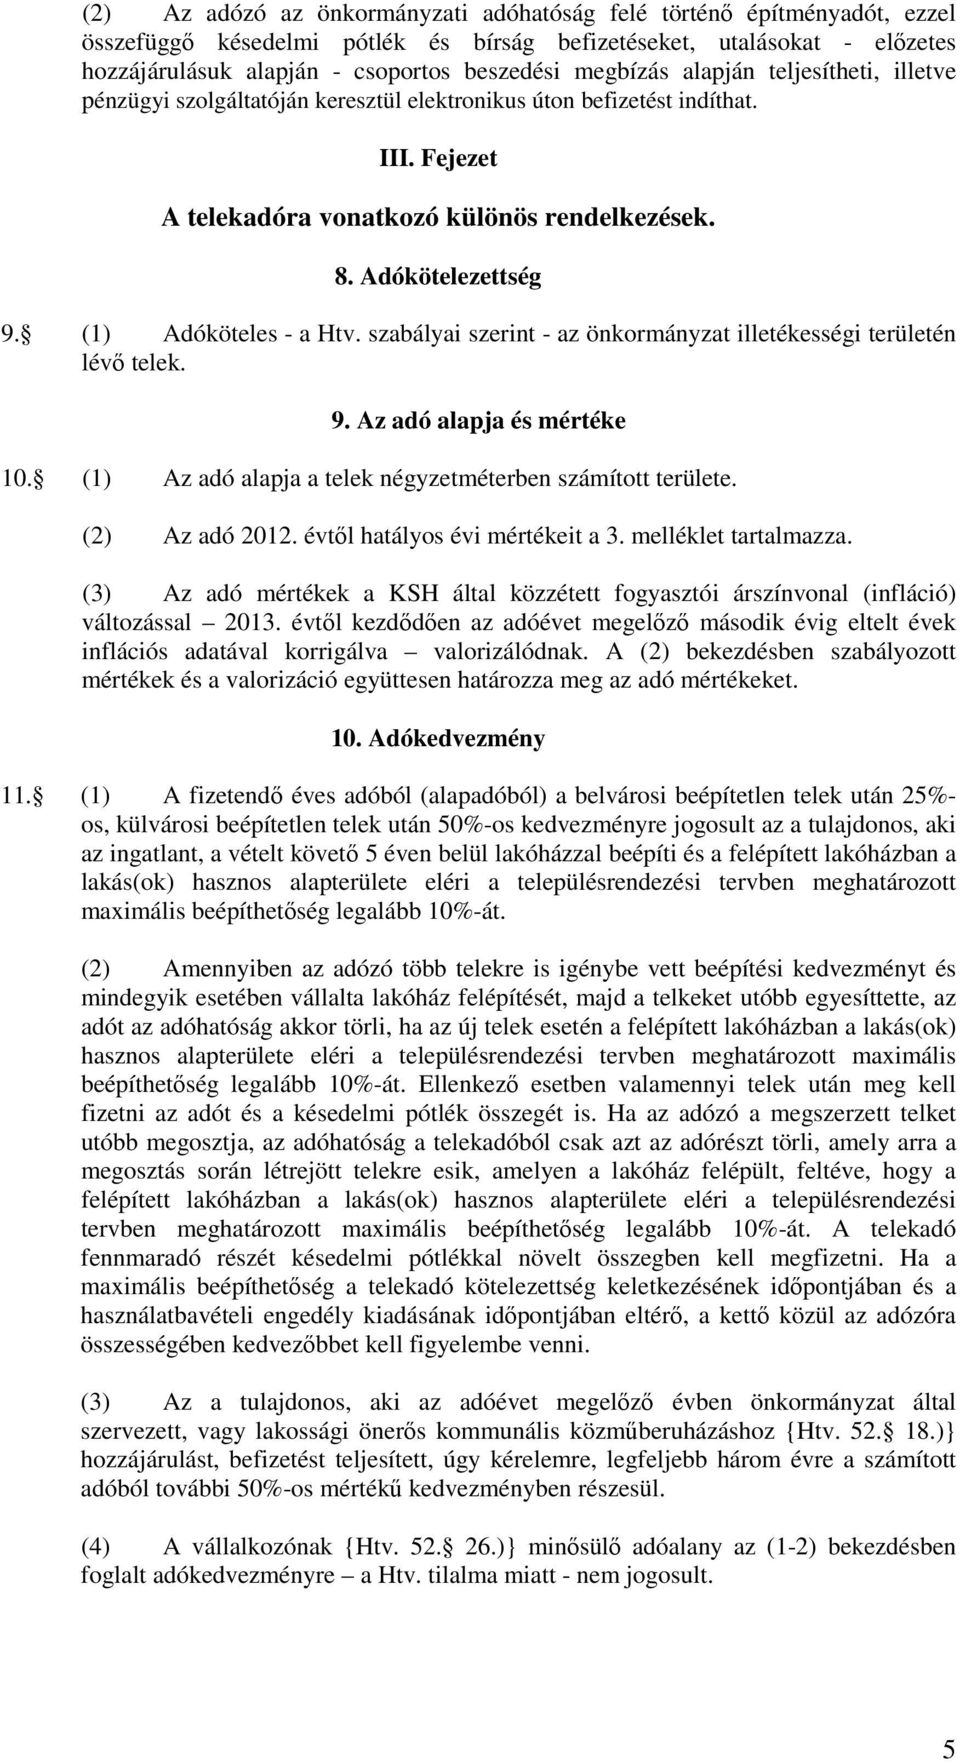 (1) Adóköteles - a Htv. szabályai szerint - az önkormányzat illetékességi területén lévı telek. 9. Az adó alapja és mértéke 10. (1) Az adó alapja a telek négyzetméterben számított területe.